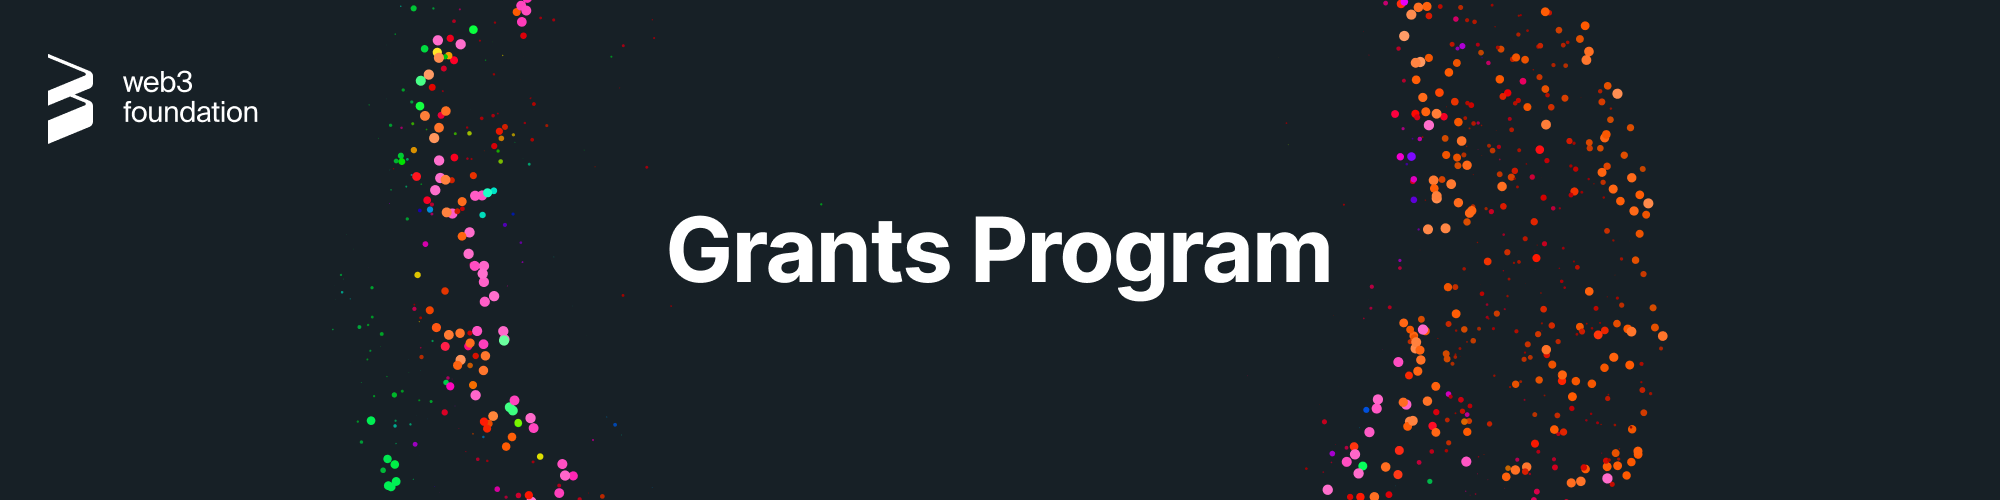 Grants_Program.png